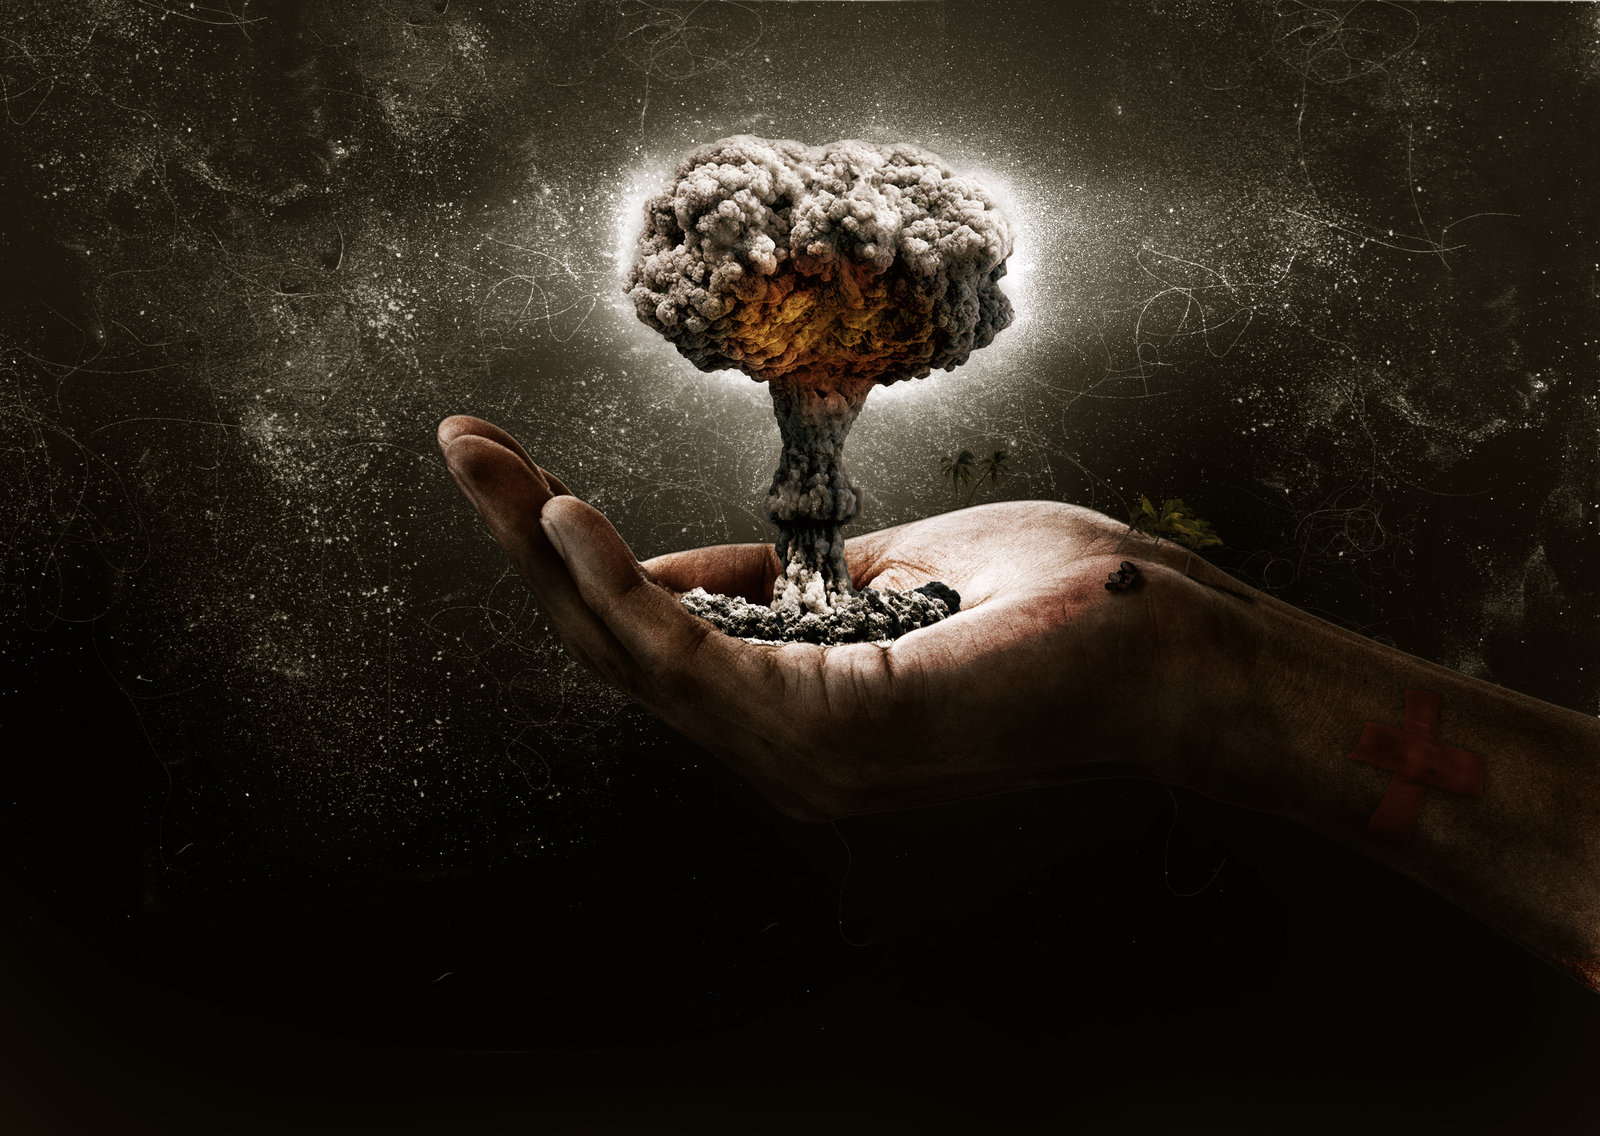 hand, Mushroom, Cloud, Blast, Explosion, Miniature, Dark, Nuclear